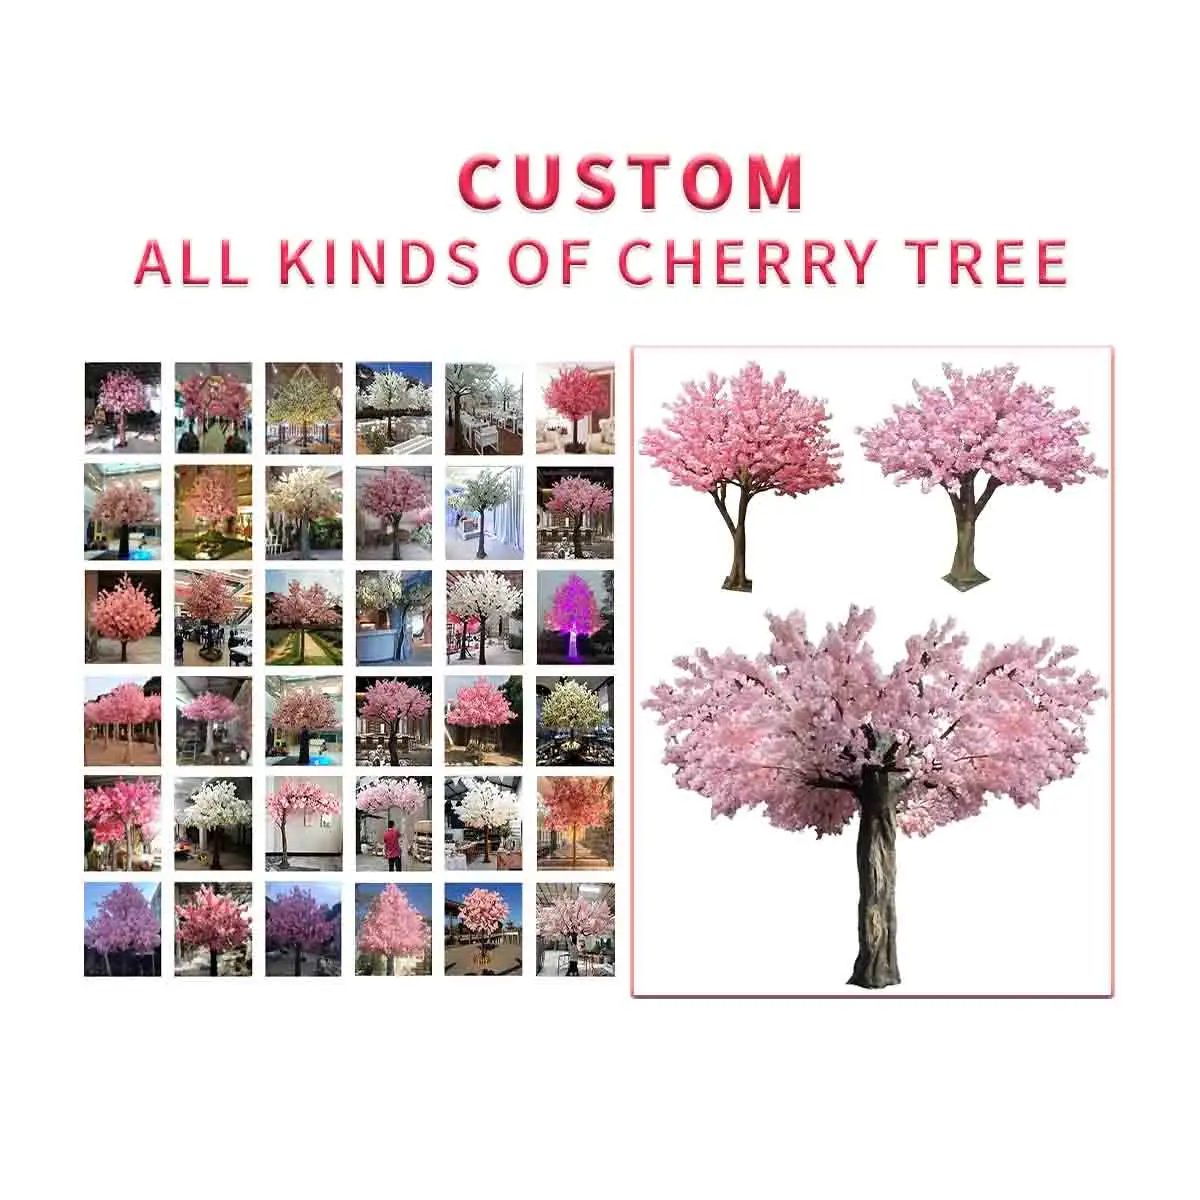 Chaud personnalisé Style forme taille fleur de cerisier arbre 8ft 9ft 10ft 11f 12ft Simulation extérieur paysage décoration cerisier